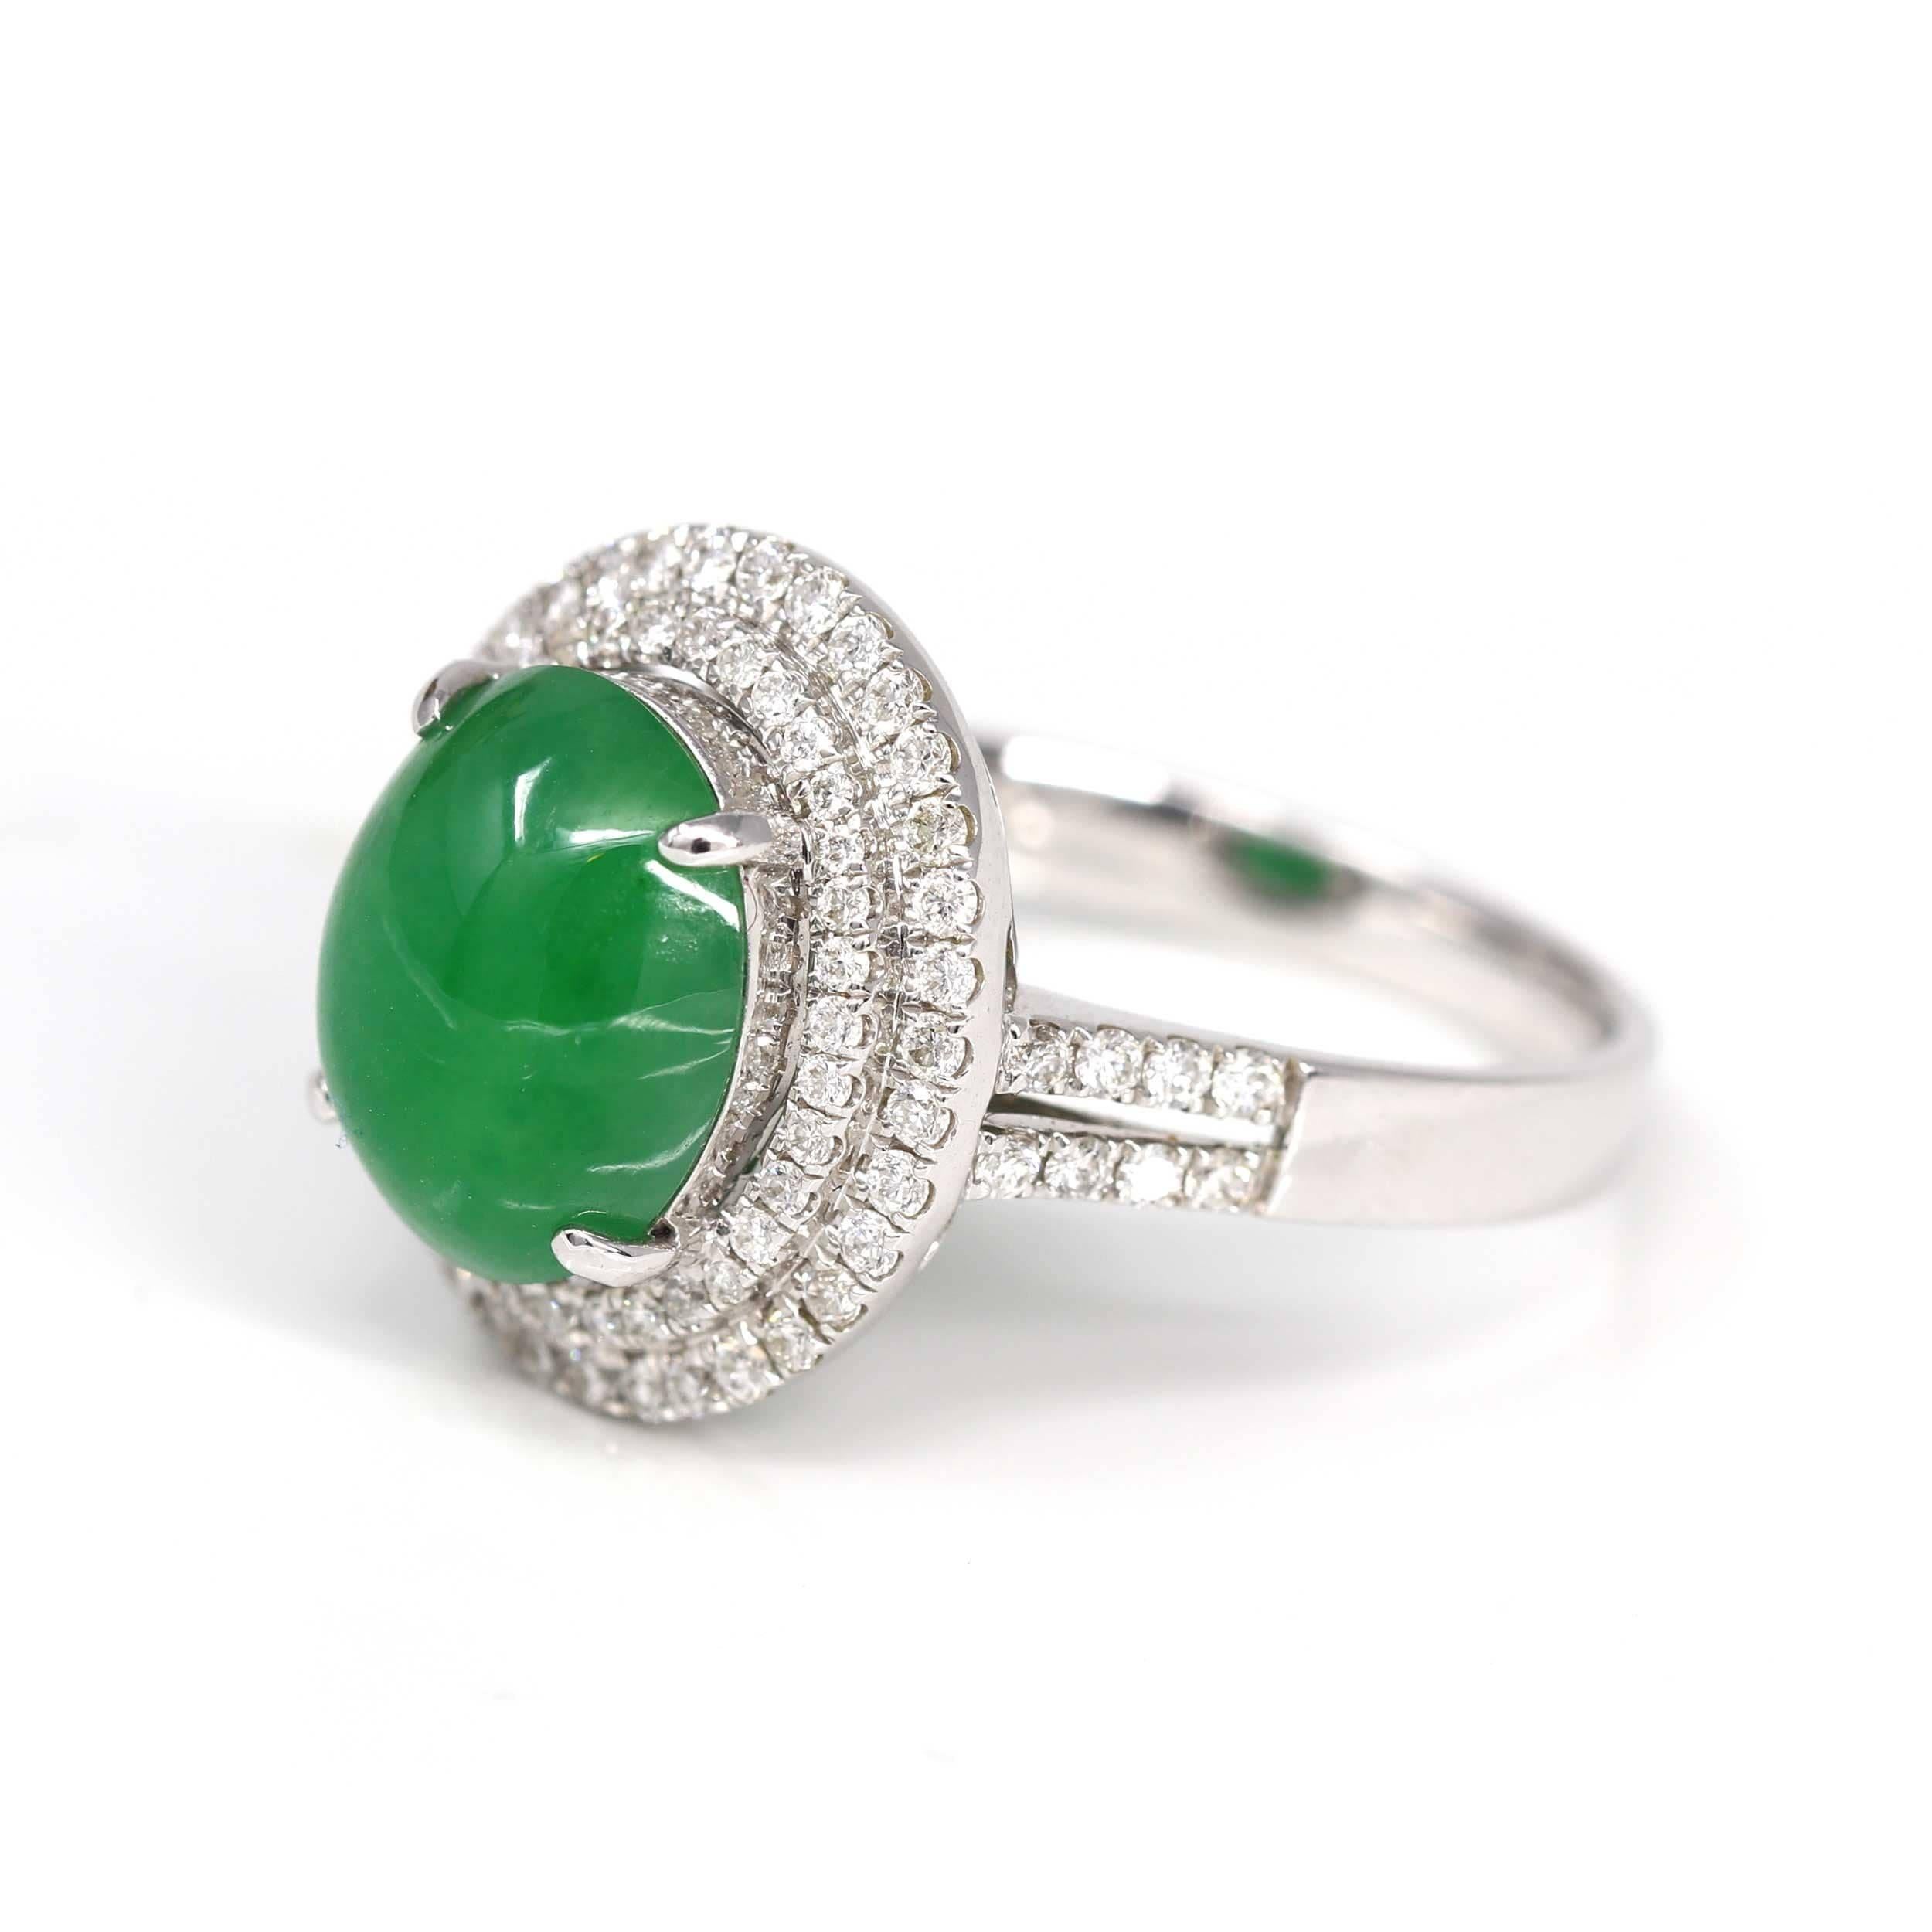 * ORIGINAL DESIGN --- Inspiriert von der natürlichen Schönheit des echten burmesischen Imperial Green Jadeit, ist die satte, schöne apfelgrüne Farbe auf keinem anderen Stein zu finden. Dieser einzigartige Verlobungsring verbindet die natürliche